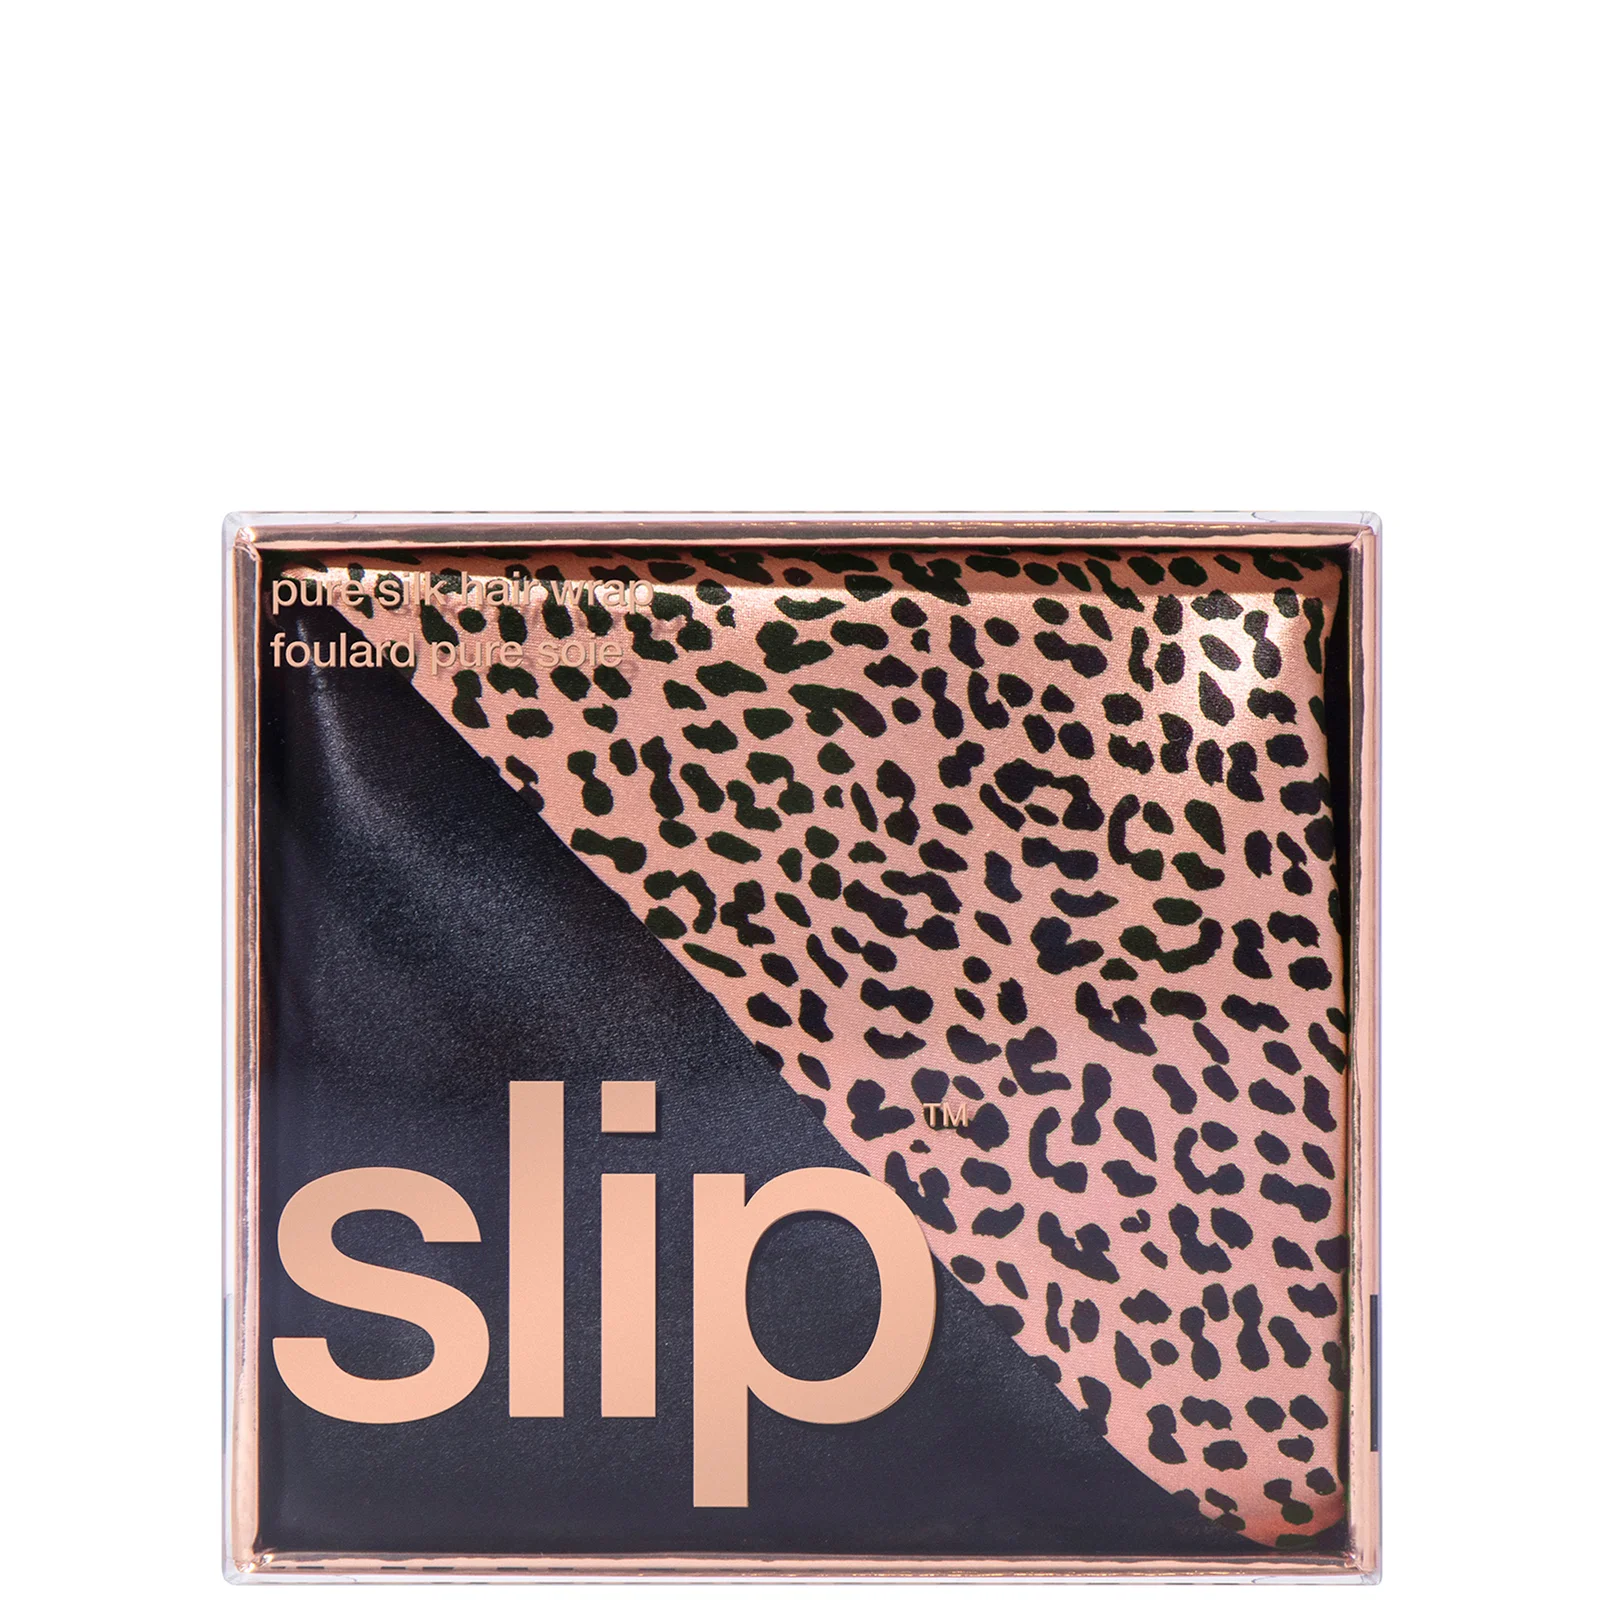 Slip Silk Hair Wrap - Wild Leopard Image 1